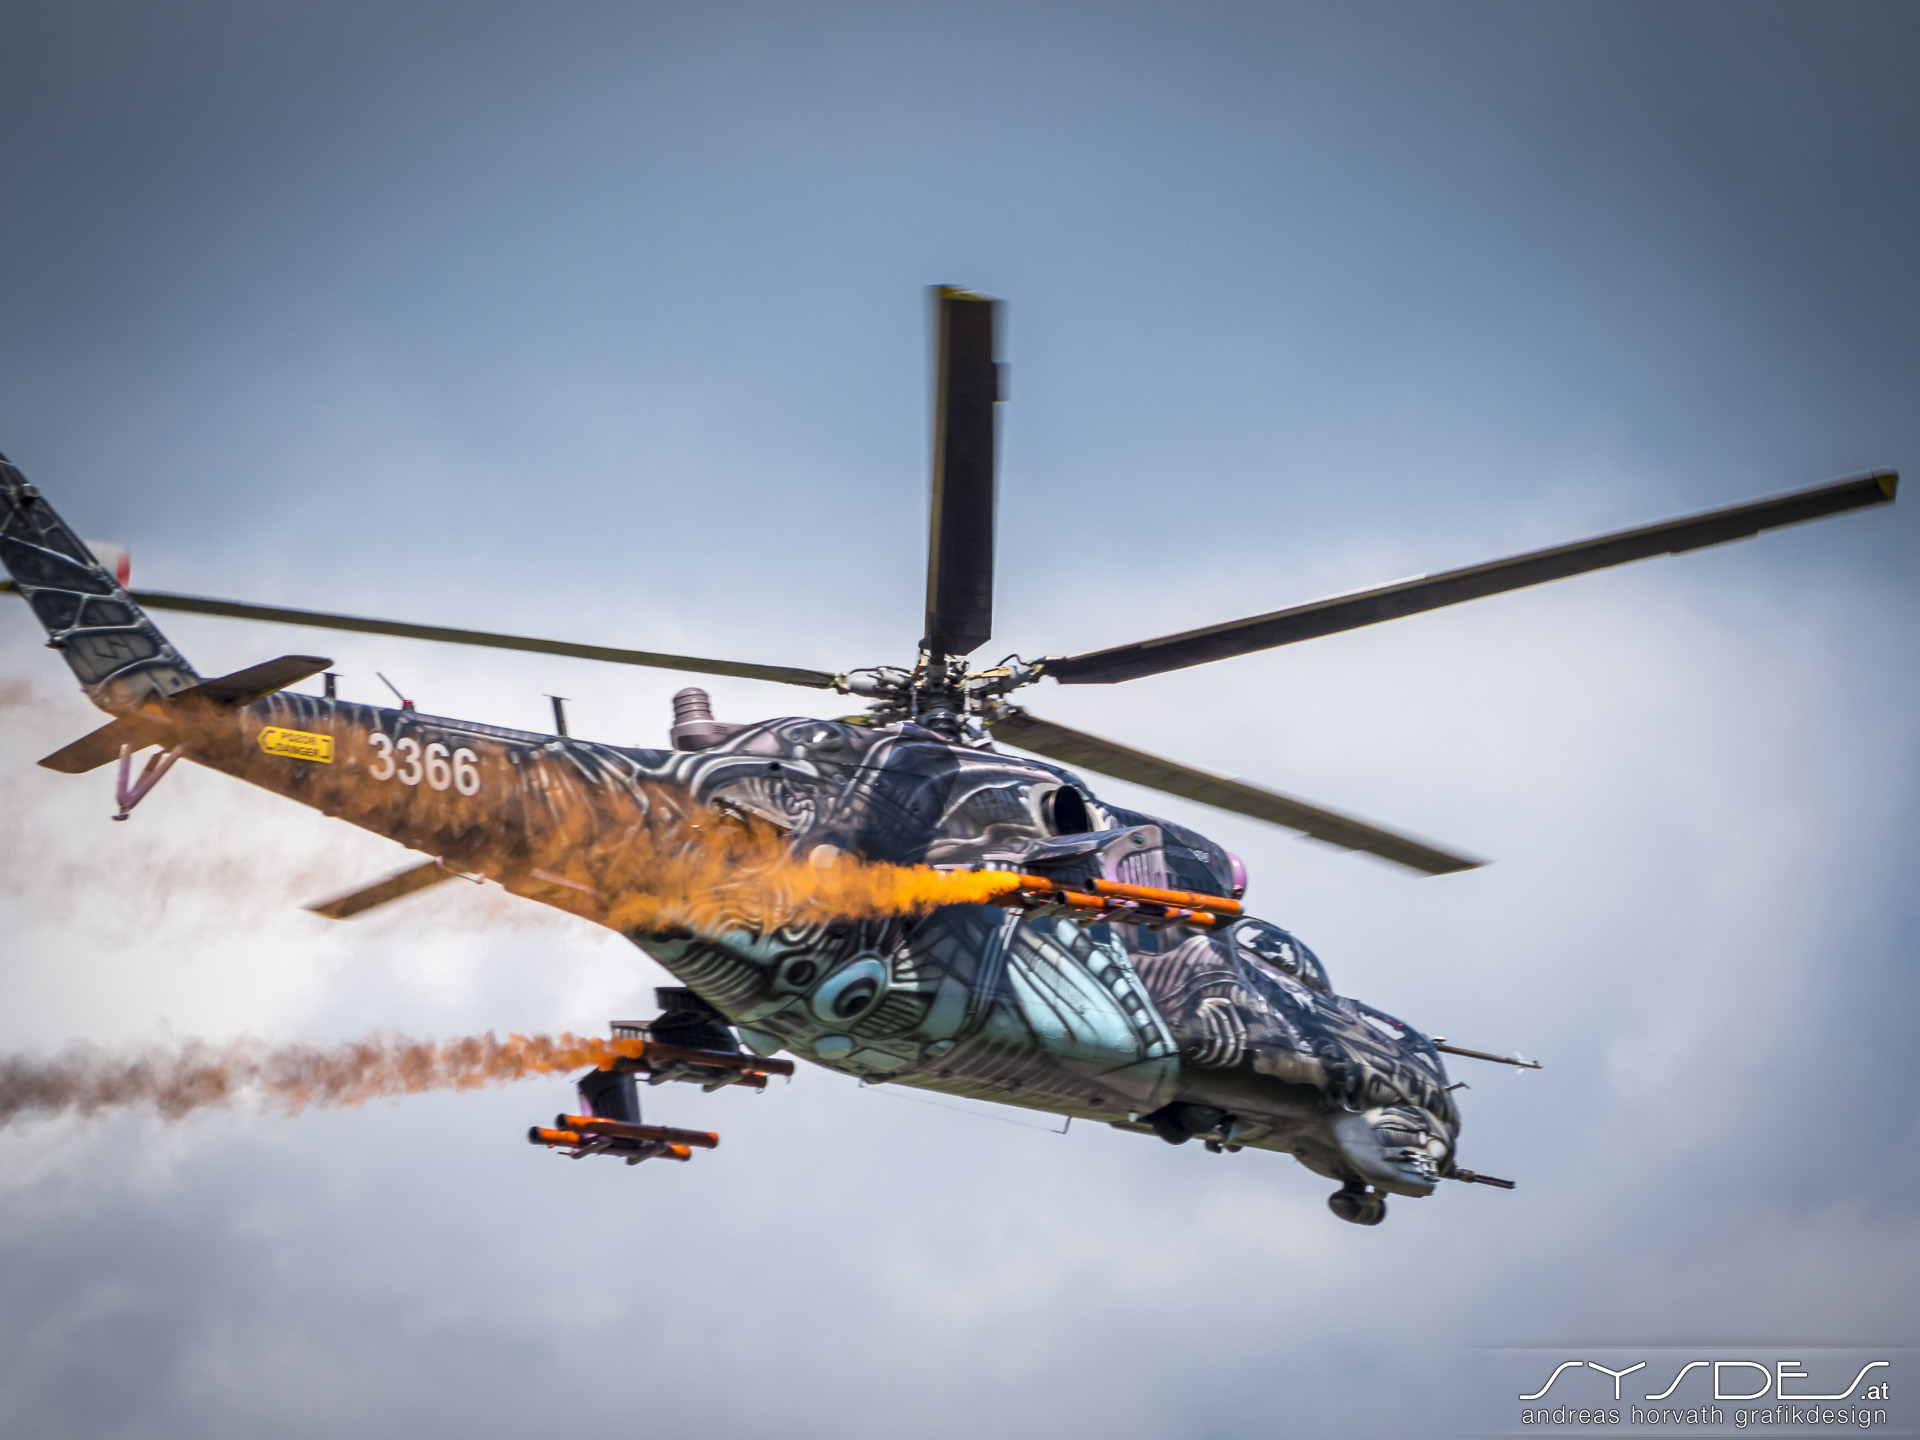 Airpower 2022 - Hubschrauber Mil Mi-24